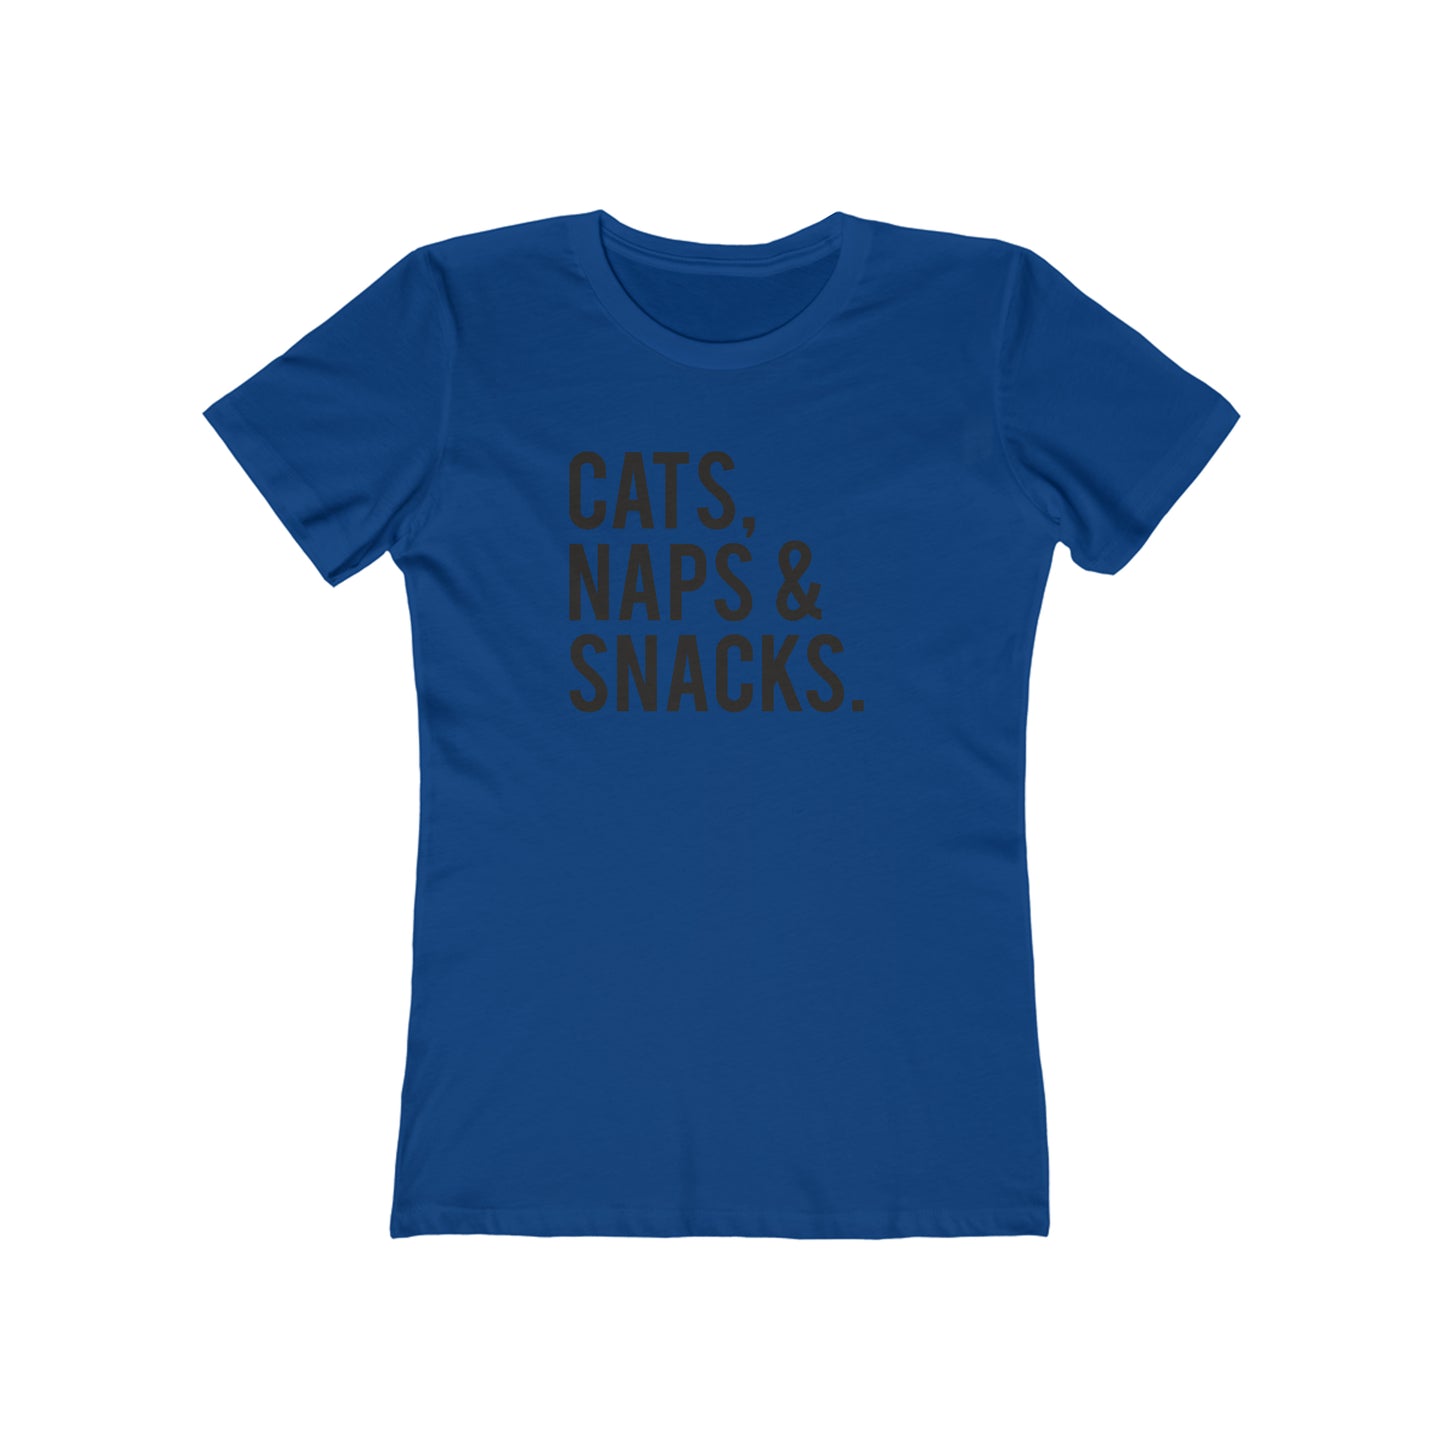 Cat, Naps & Snacks. - Women's T-shirt